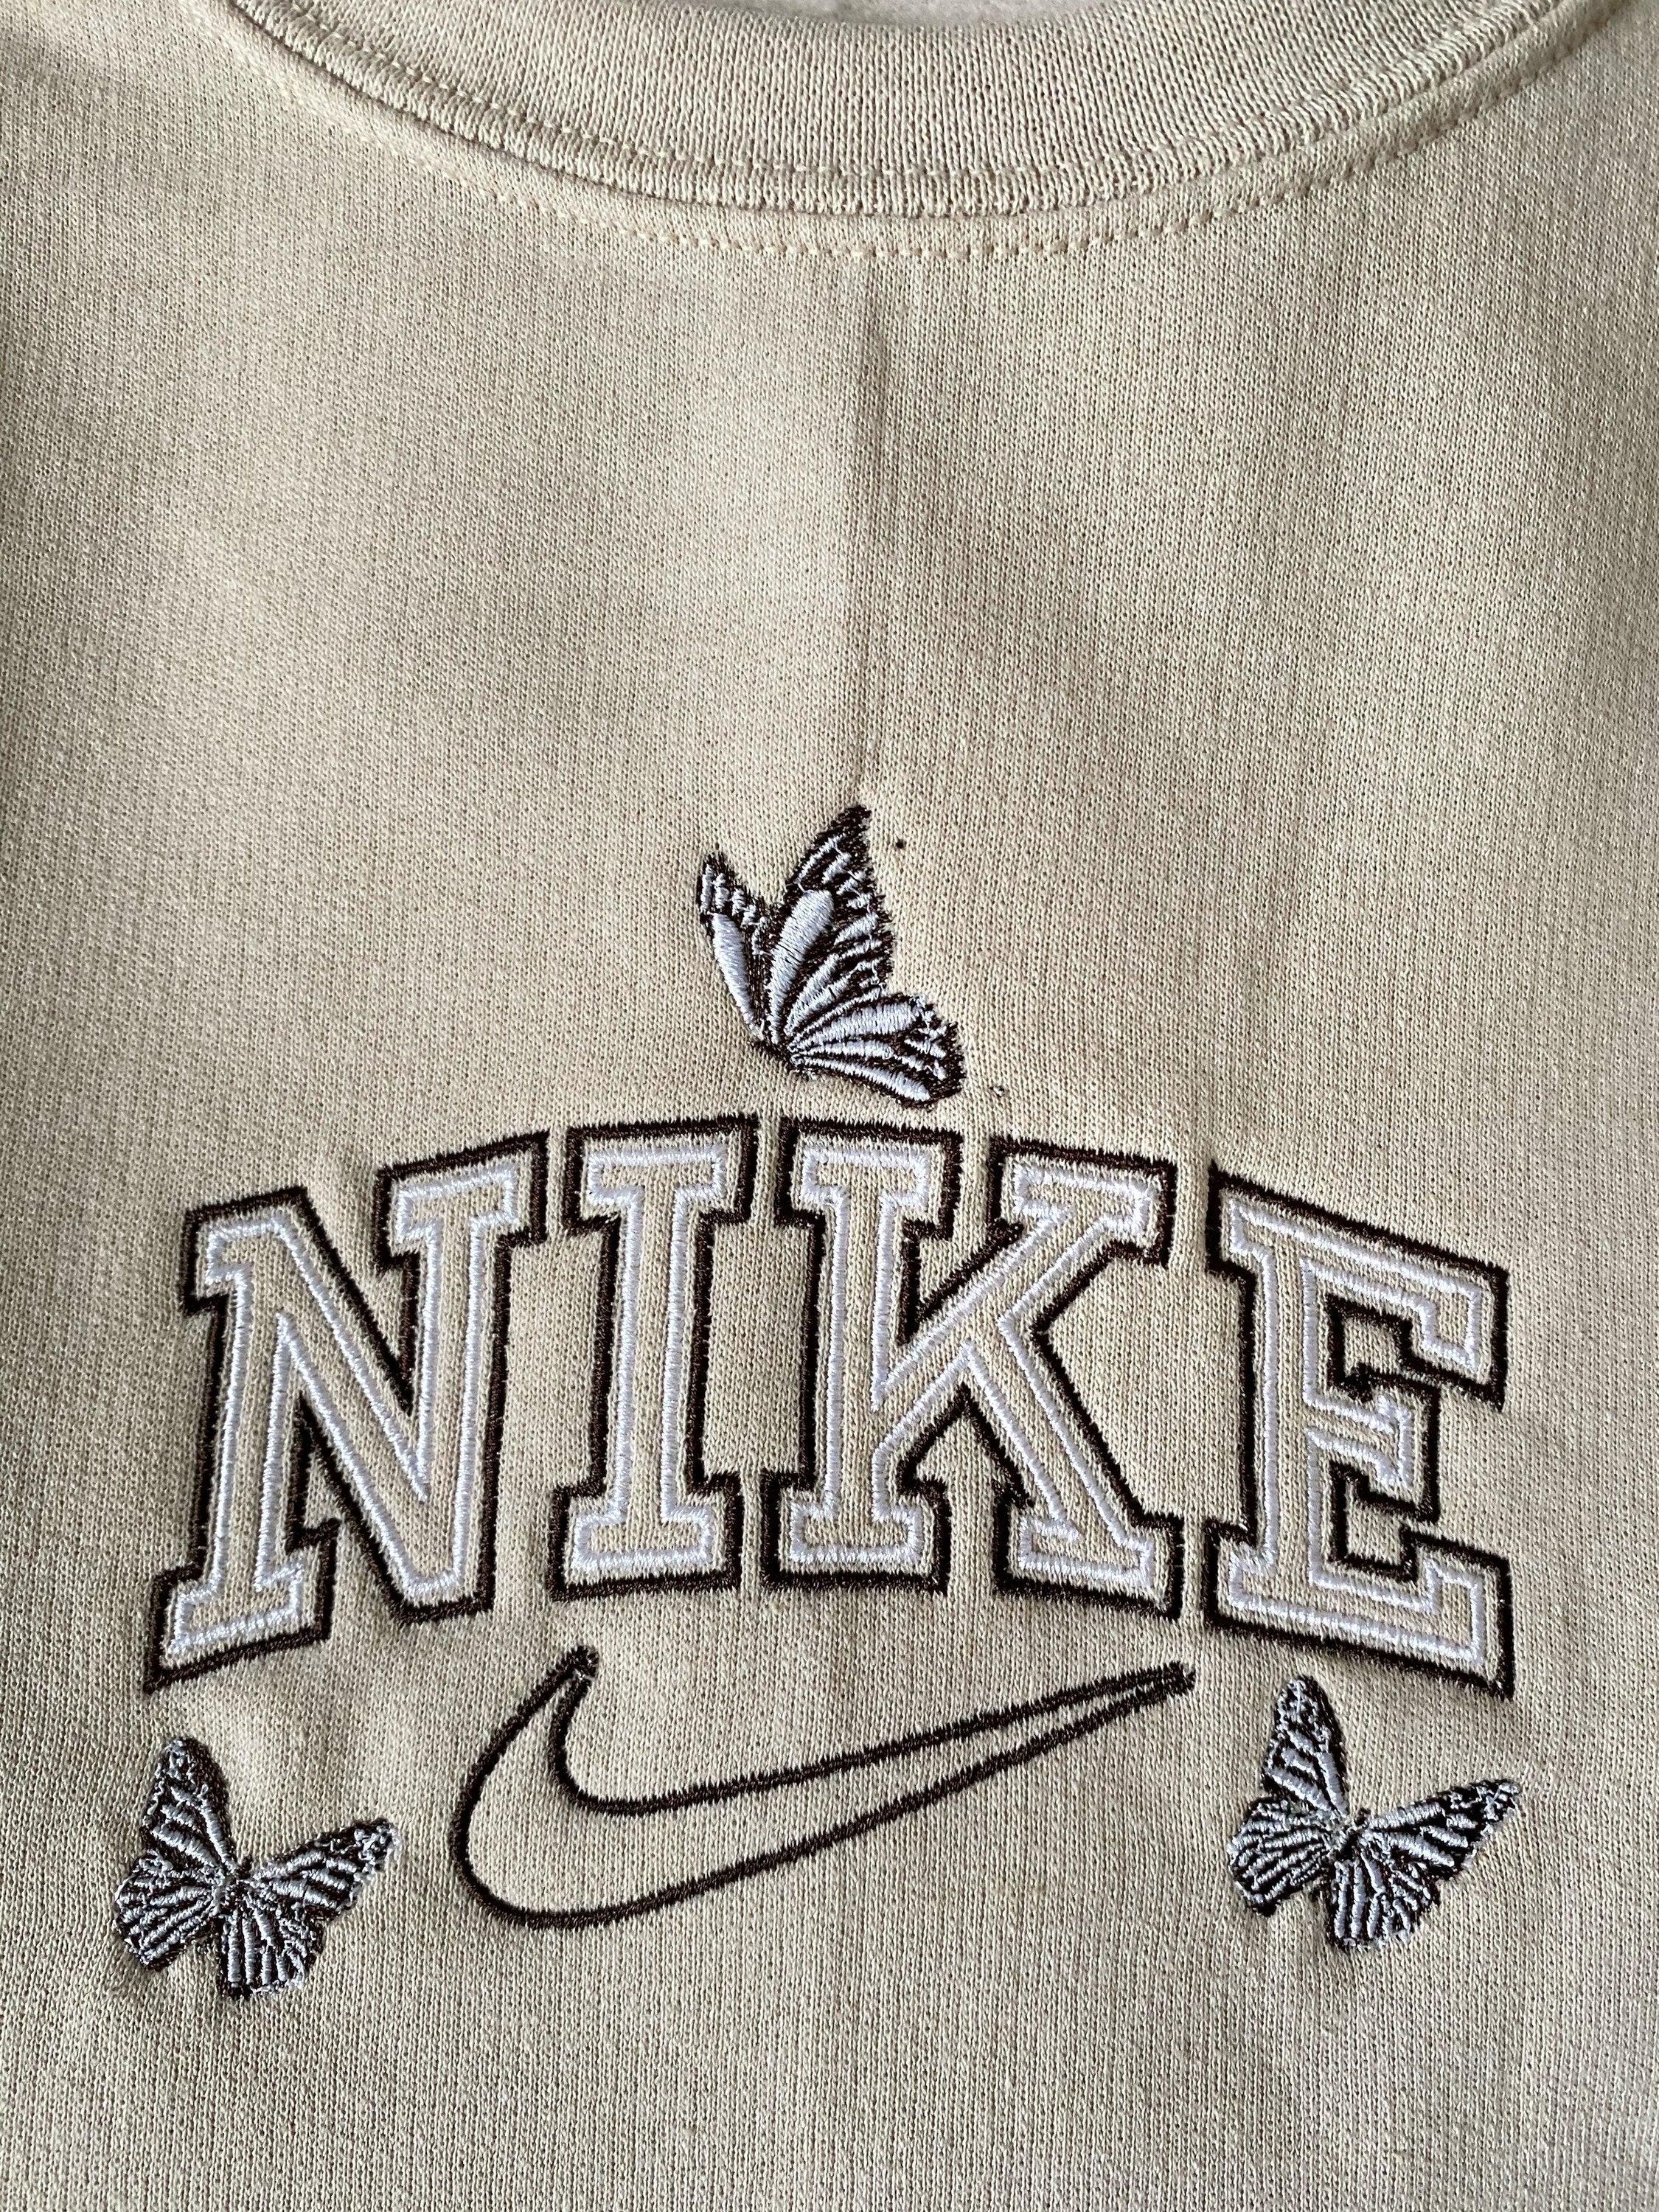 Nike Baller Swoosh Embroidered Sweatshirt Vintage Nike Swoosh